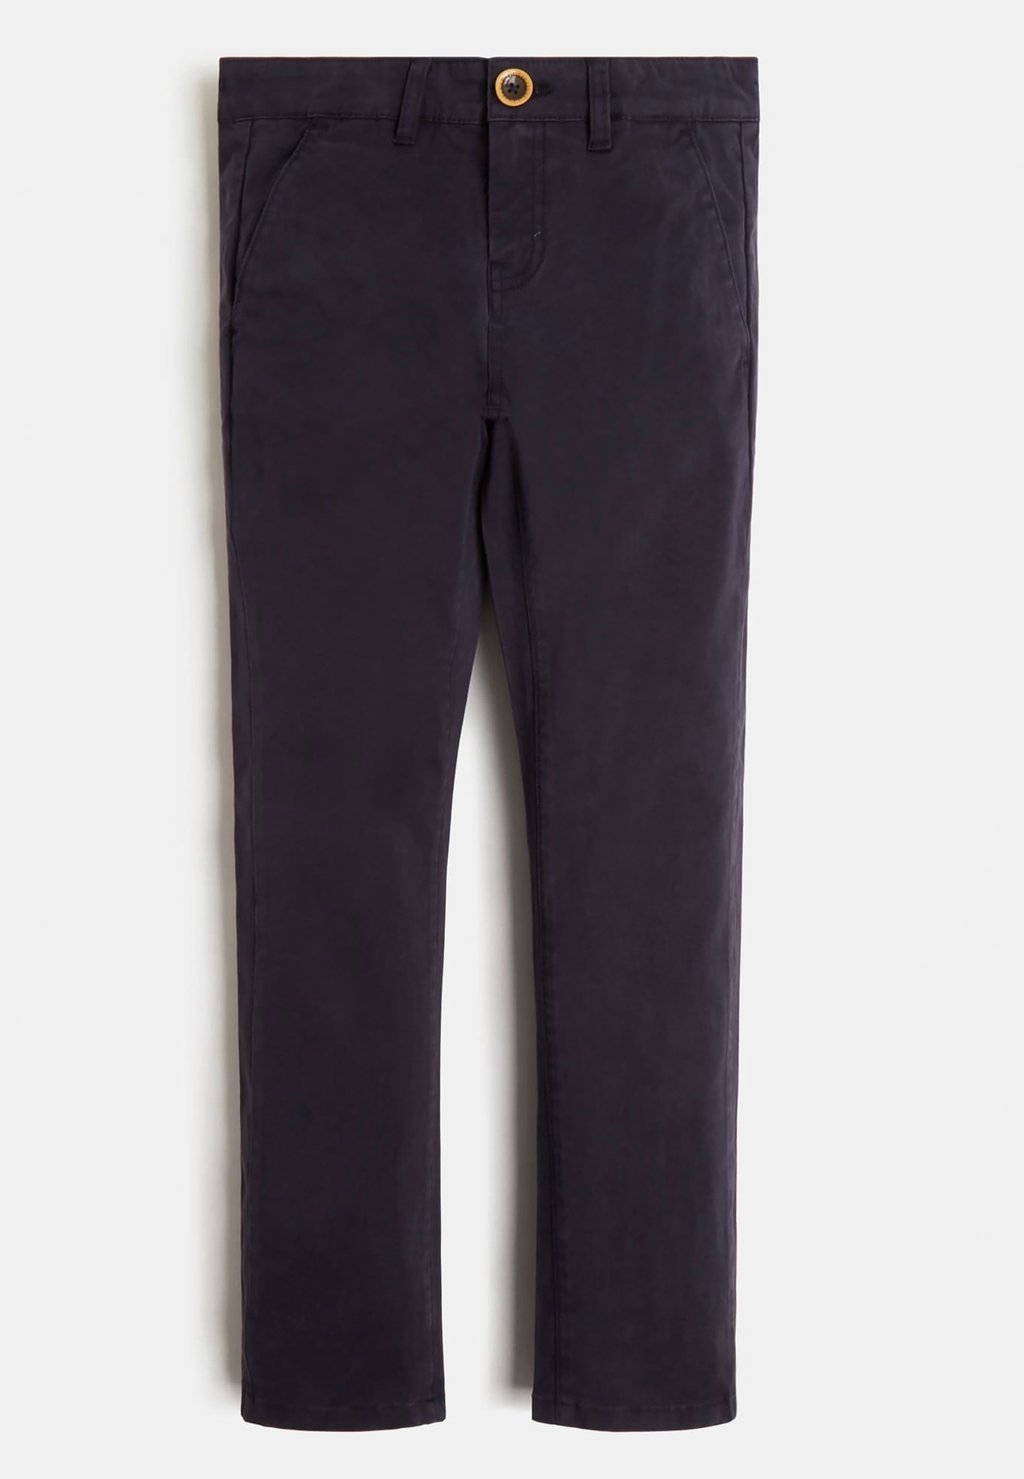 Брюки из ткани REGULAR FIT Guess, цвет dunkelblau брюки из ткани puschel design цвет grau dunkelblau